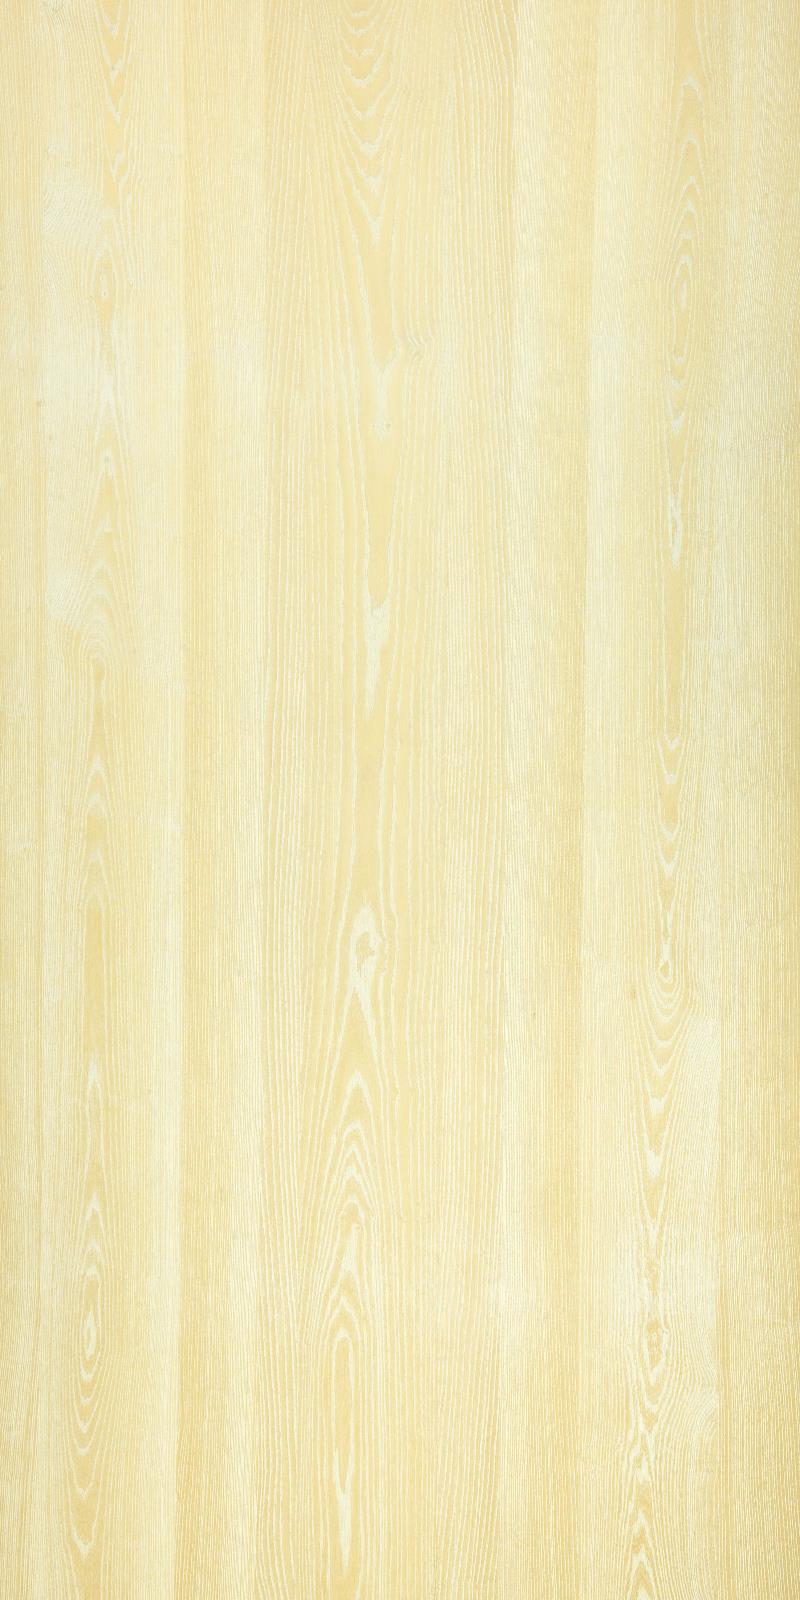 SJ-8188~1A 天然白栓木實木拼鋼刷塗裝板